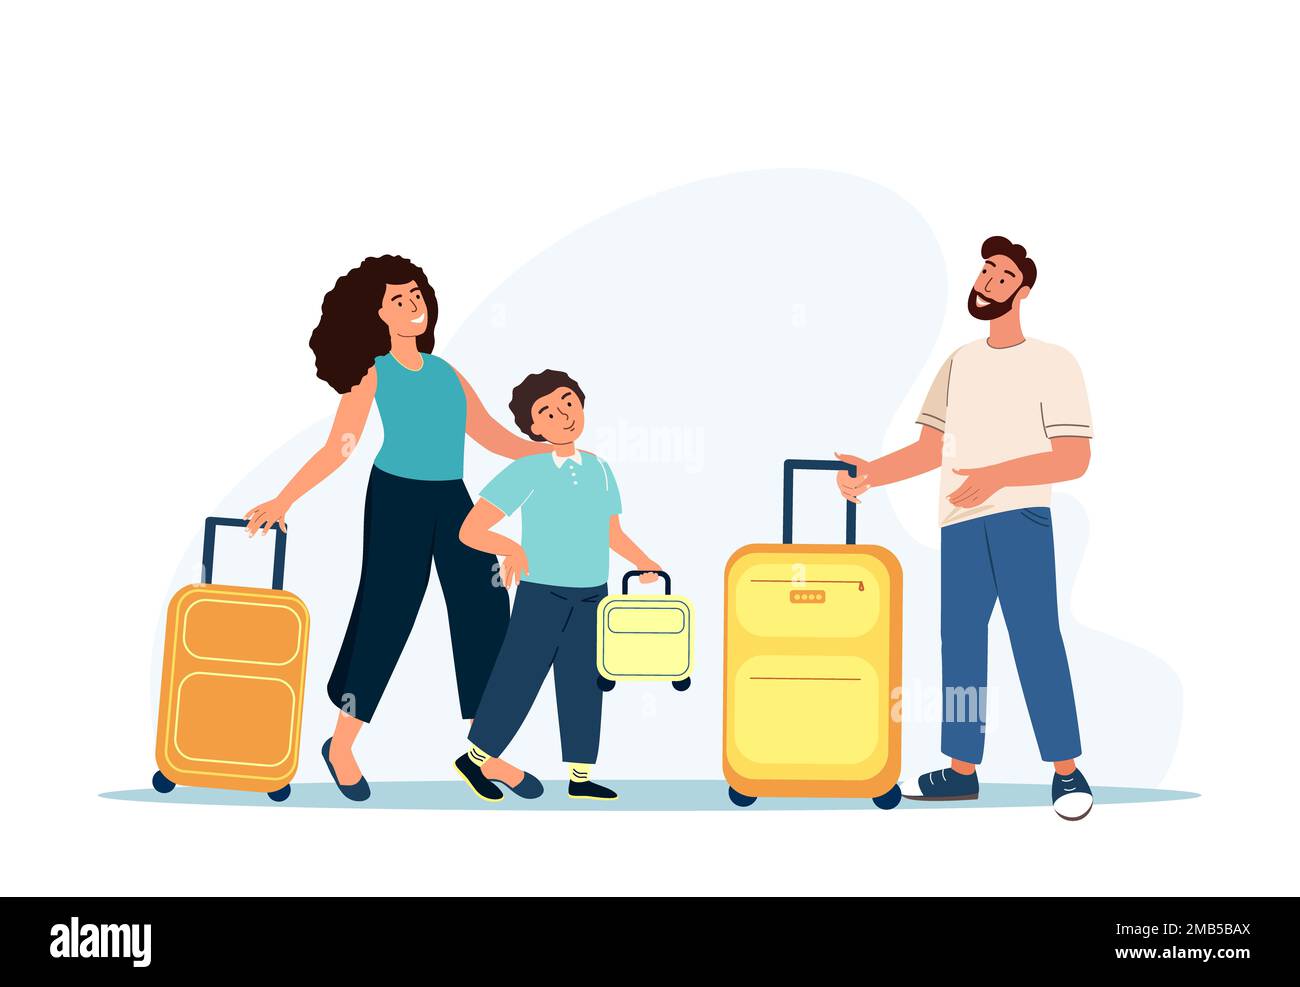 Familienausflug, Reisekonzept. Fröhliche Eltern und Sohn mit Koffer, die zur Anmeldung am Flughafen gehen. Touristische Figuren, Gepäck Boarding im Flugzeug Stockfoto